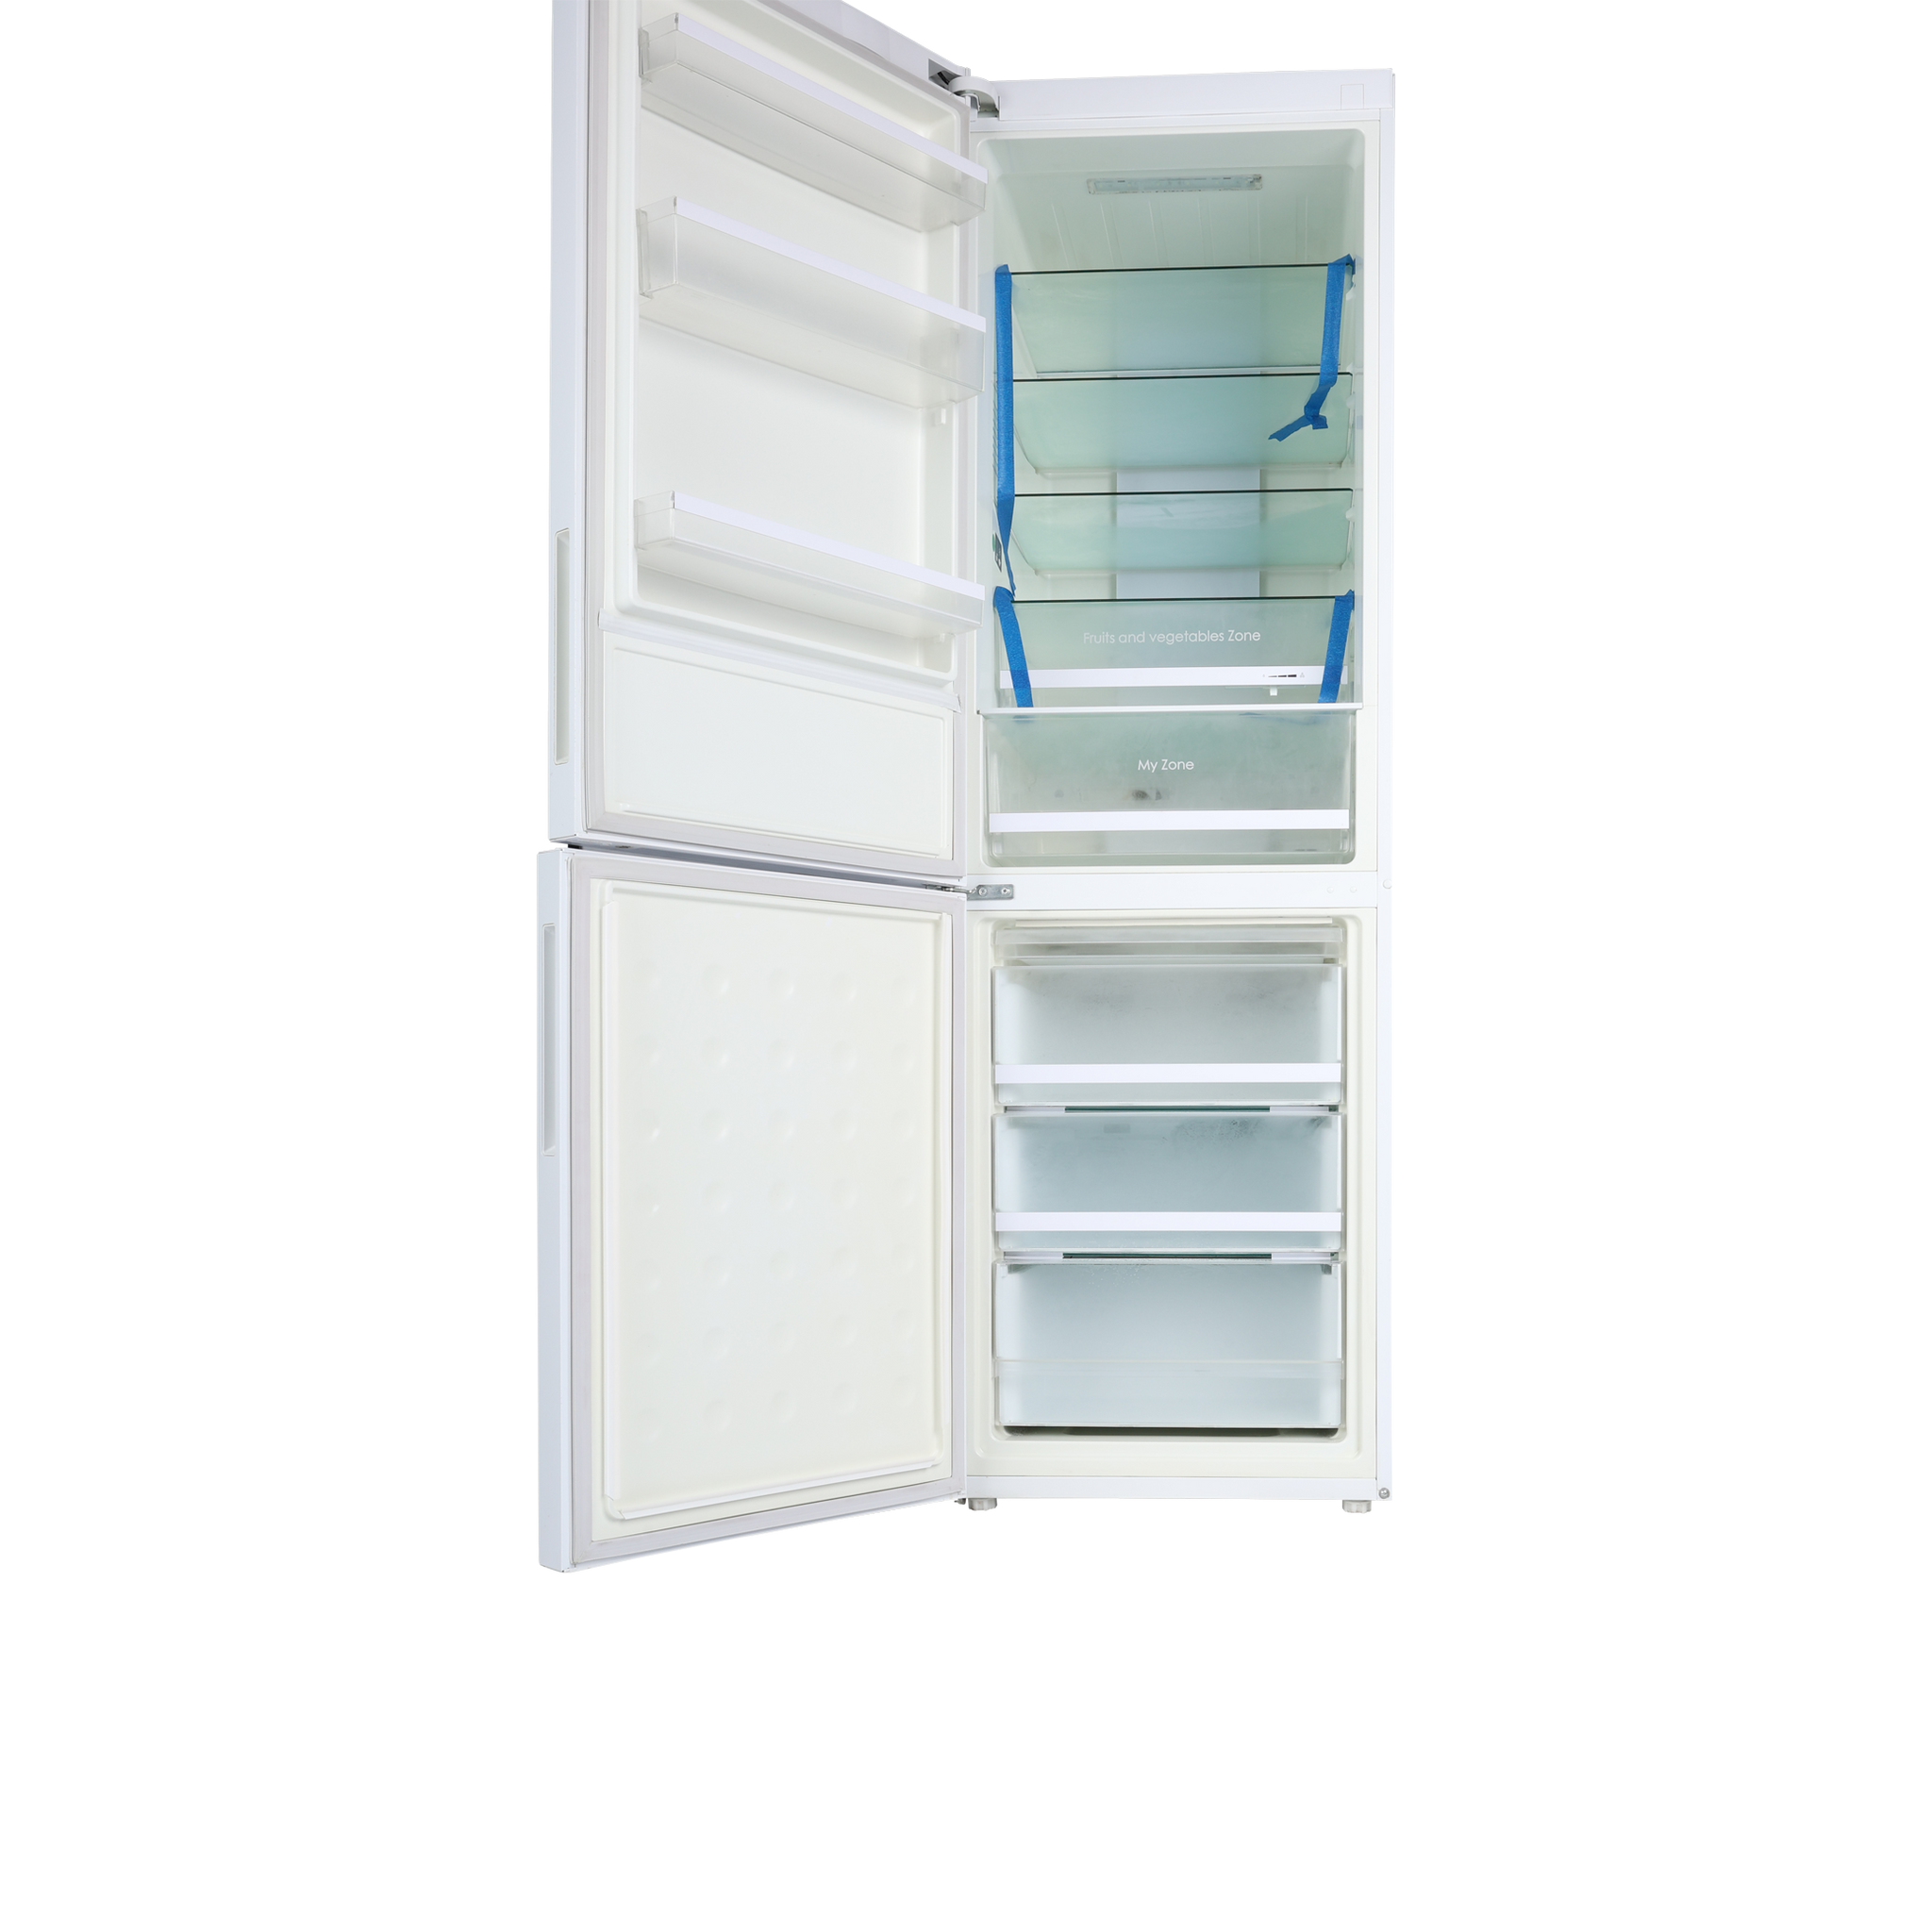 Réfrigérateur congélateur à double porte - C2FE636CWJ - Haier - en pose  libre / avec congélateur en bas / résidentiel